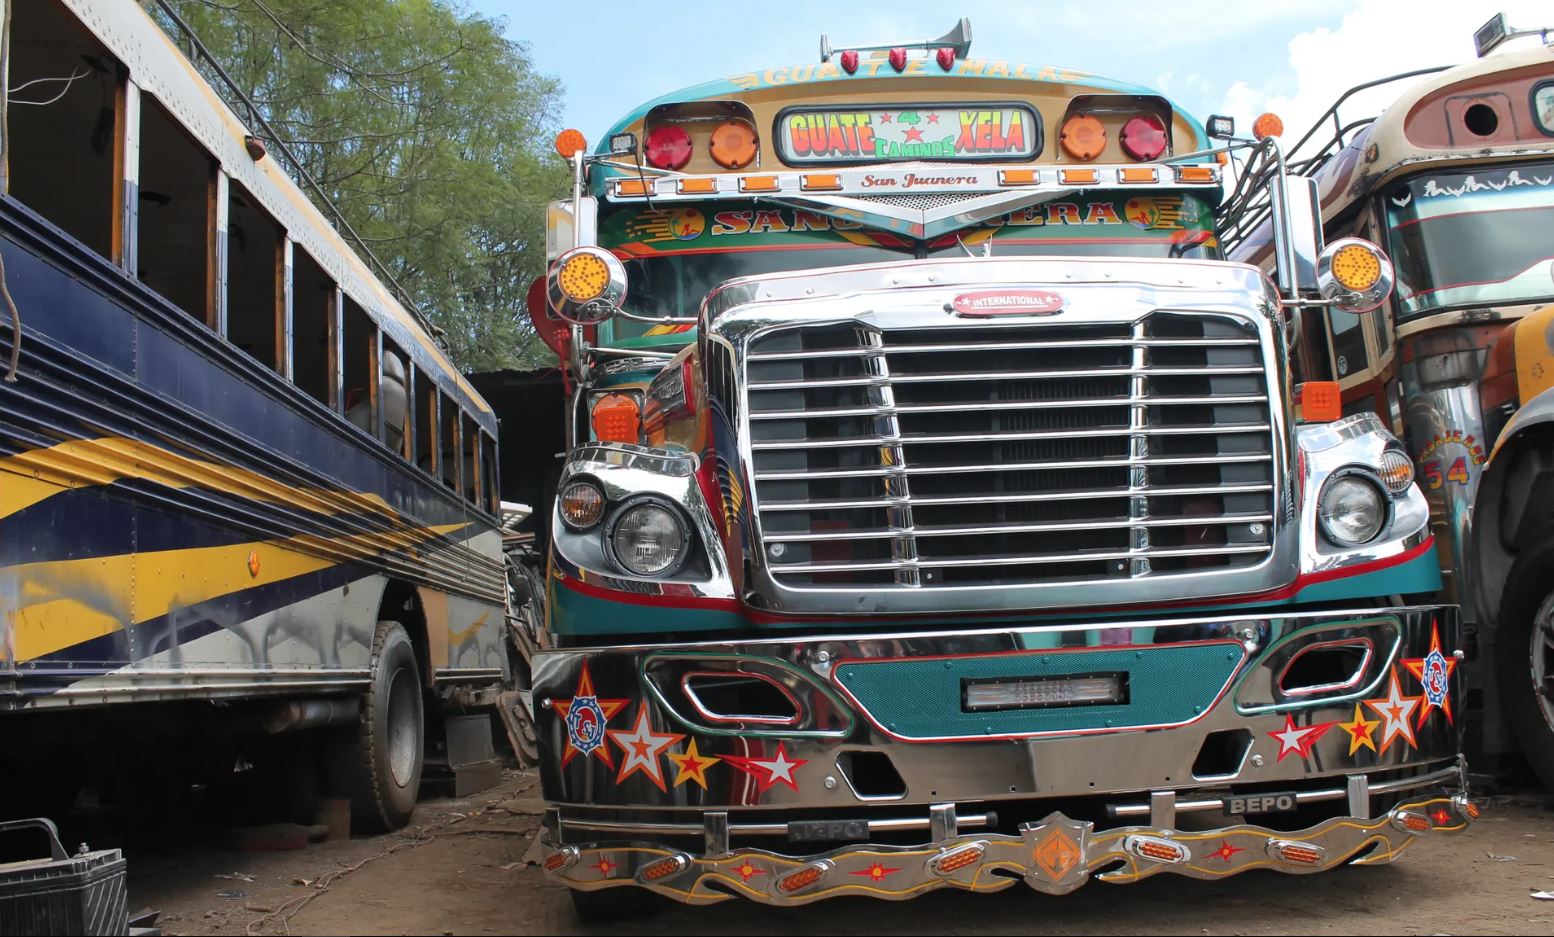 Los autobuses interurbanos como éste se restauraron con cromo y elaboraron trabajos de pintura personalizados, pero debajo de la superficie hay clunkers.
(Foto Prensa Libre:  Martha Pskowski/The Guardian